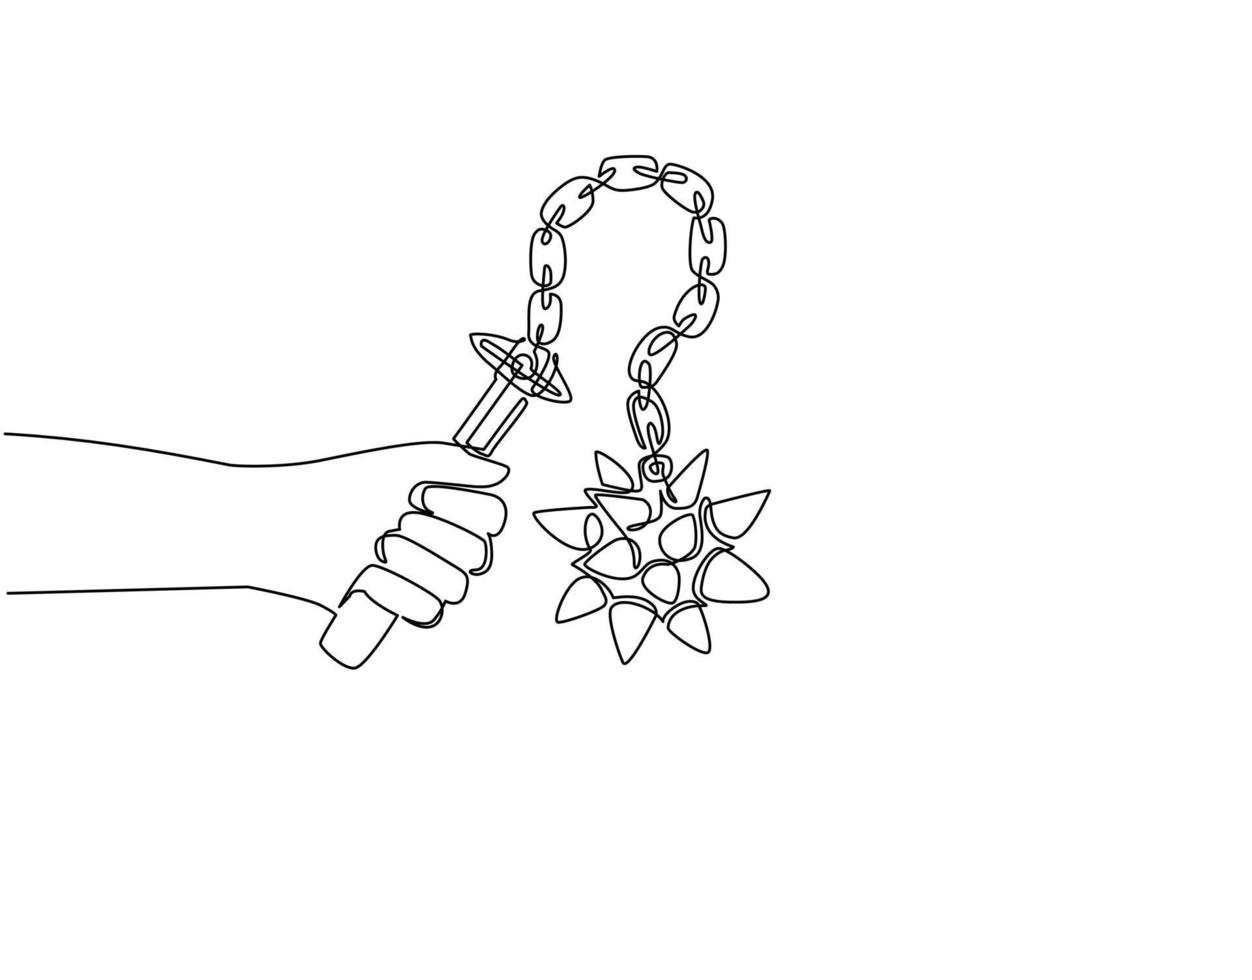 kontinuierliche einzeilige zeichnung hand, die dreschflegel mit stachelkugel hält. Mittelalterliche Waffe - stachelige Metallkugel mit Kette und Holzgriff. Symbol für Ritterausrüstung. einzeiliges zeichnen design vektorillustration vektor